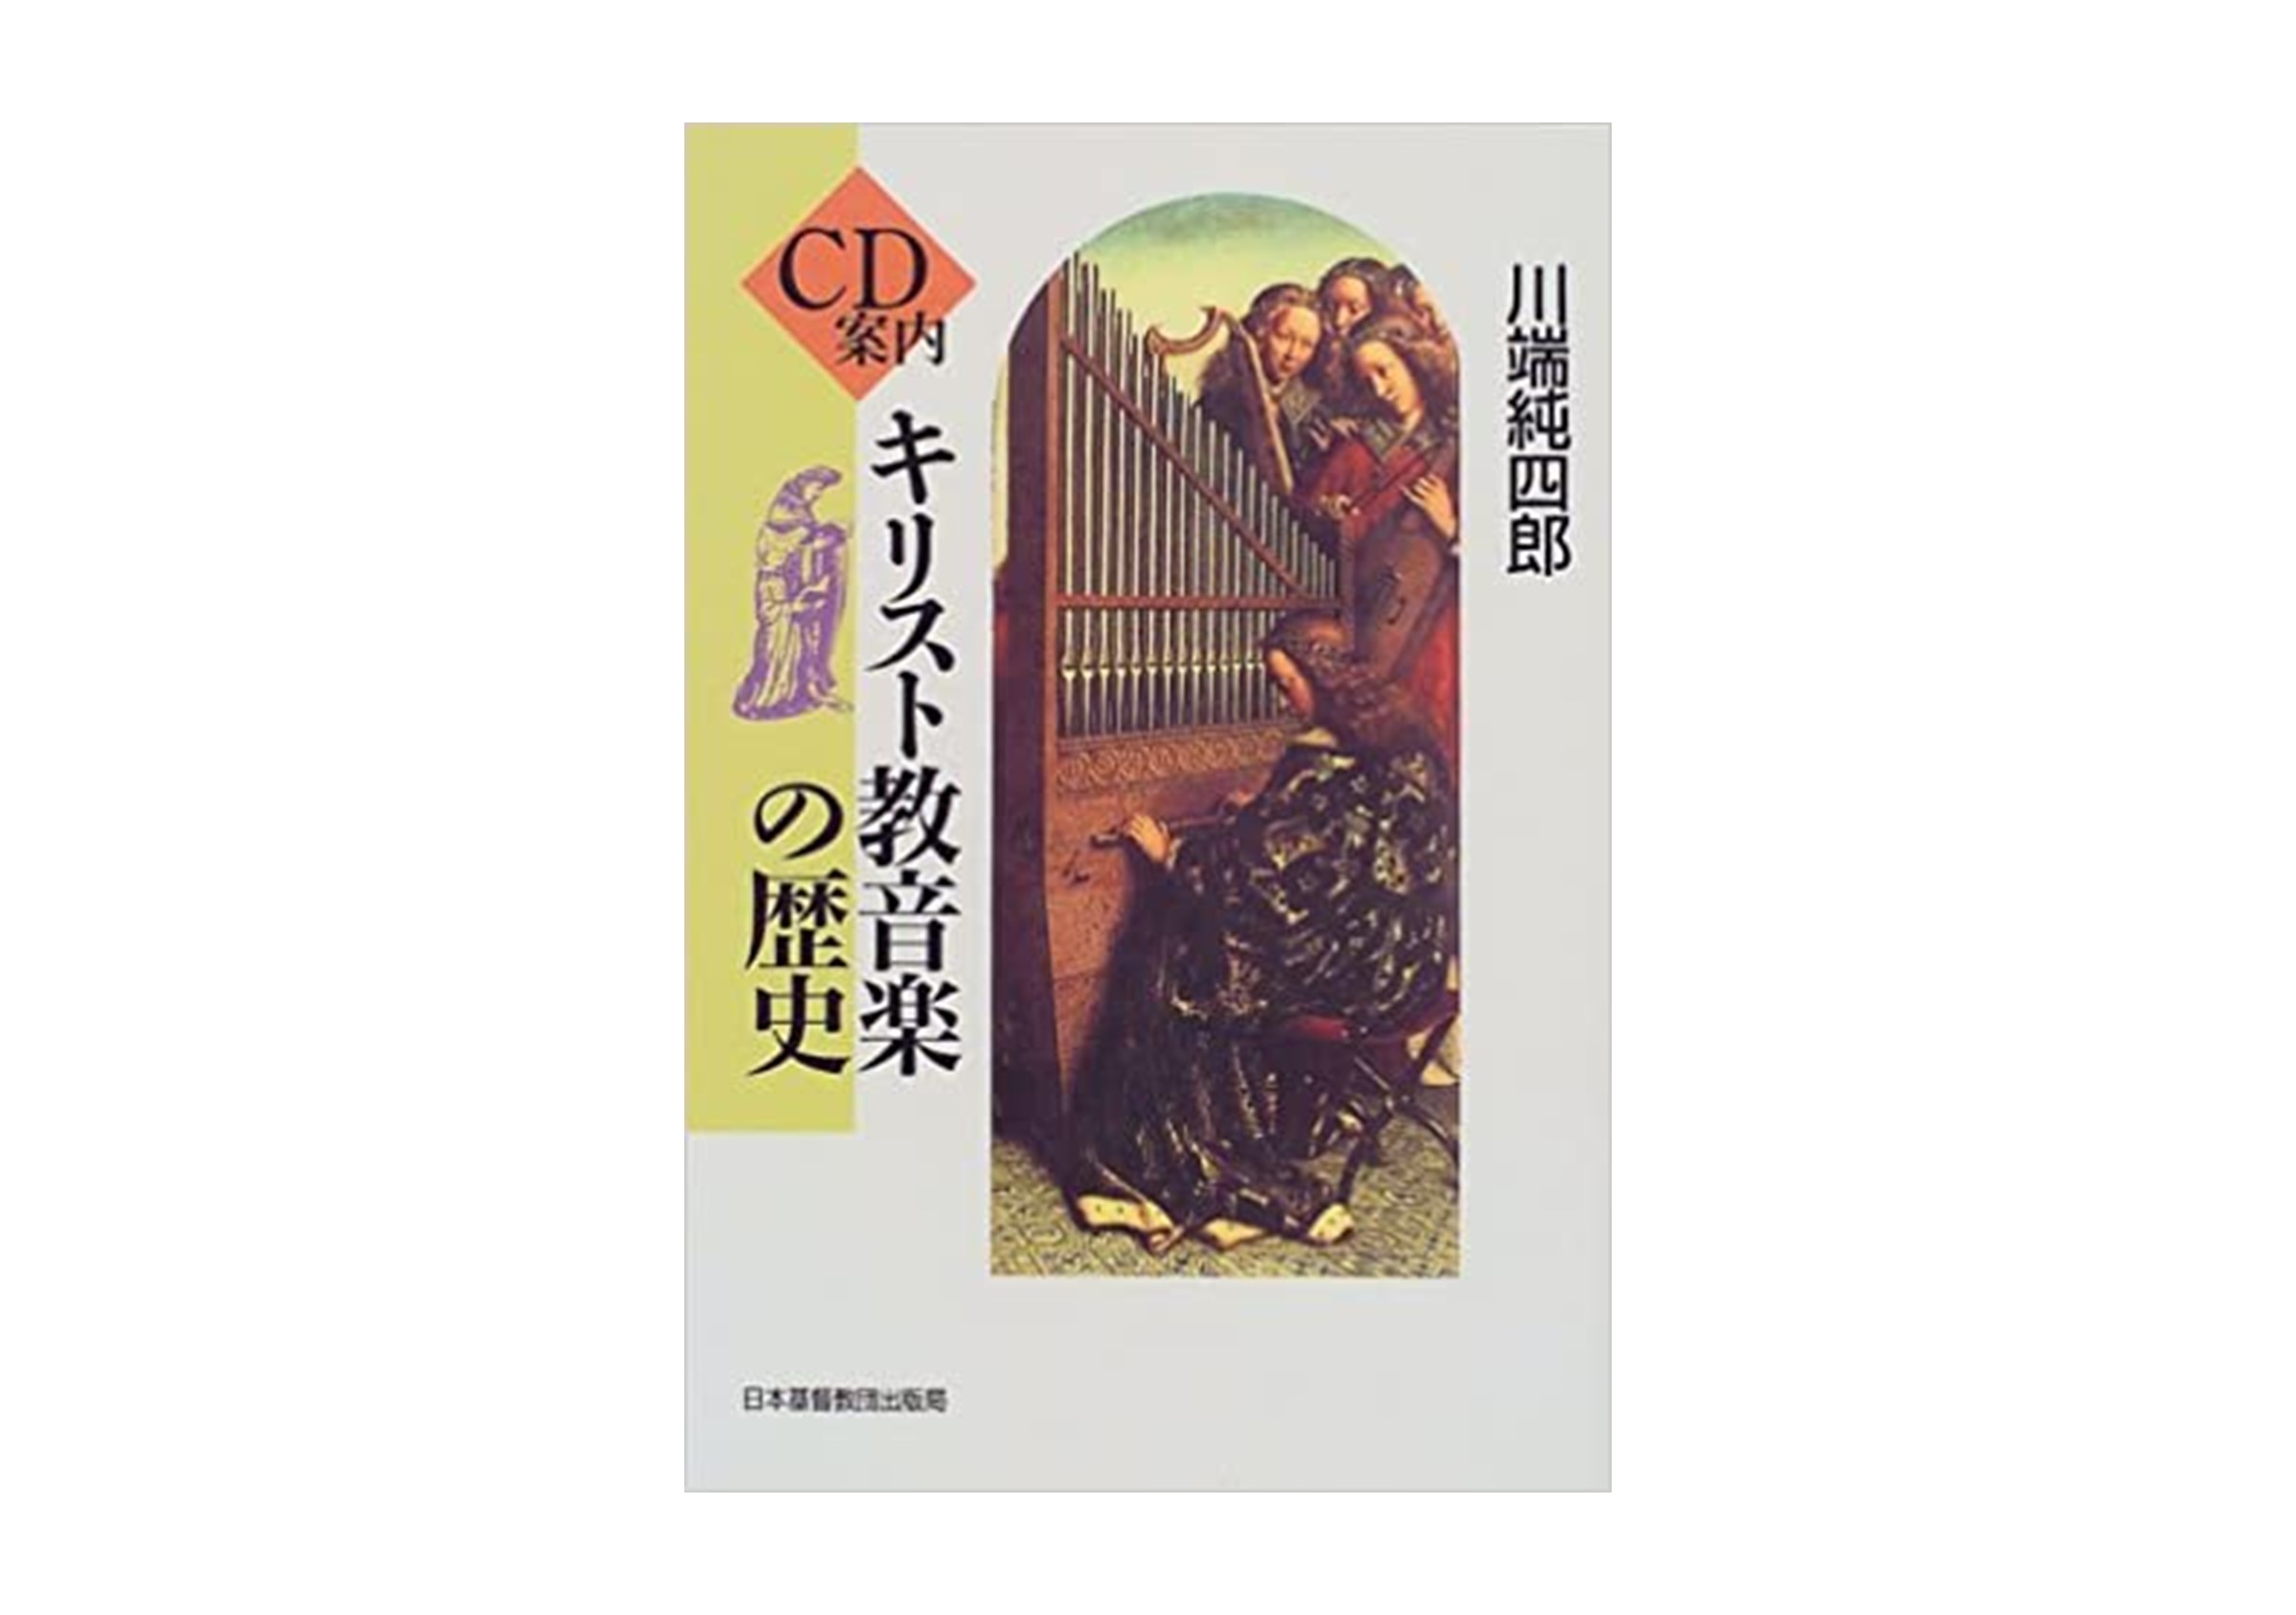 川端純四郎著 CD案内 キリスト教音楽の歴史年、日本キリスト